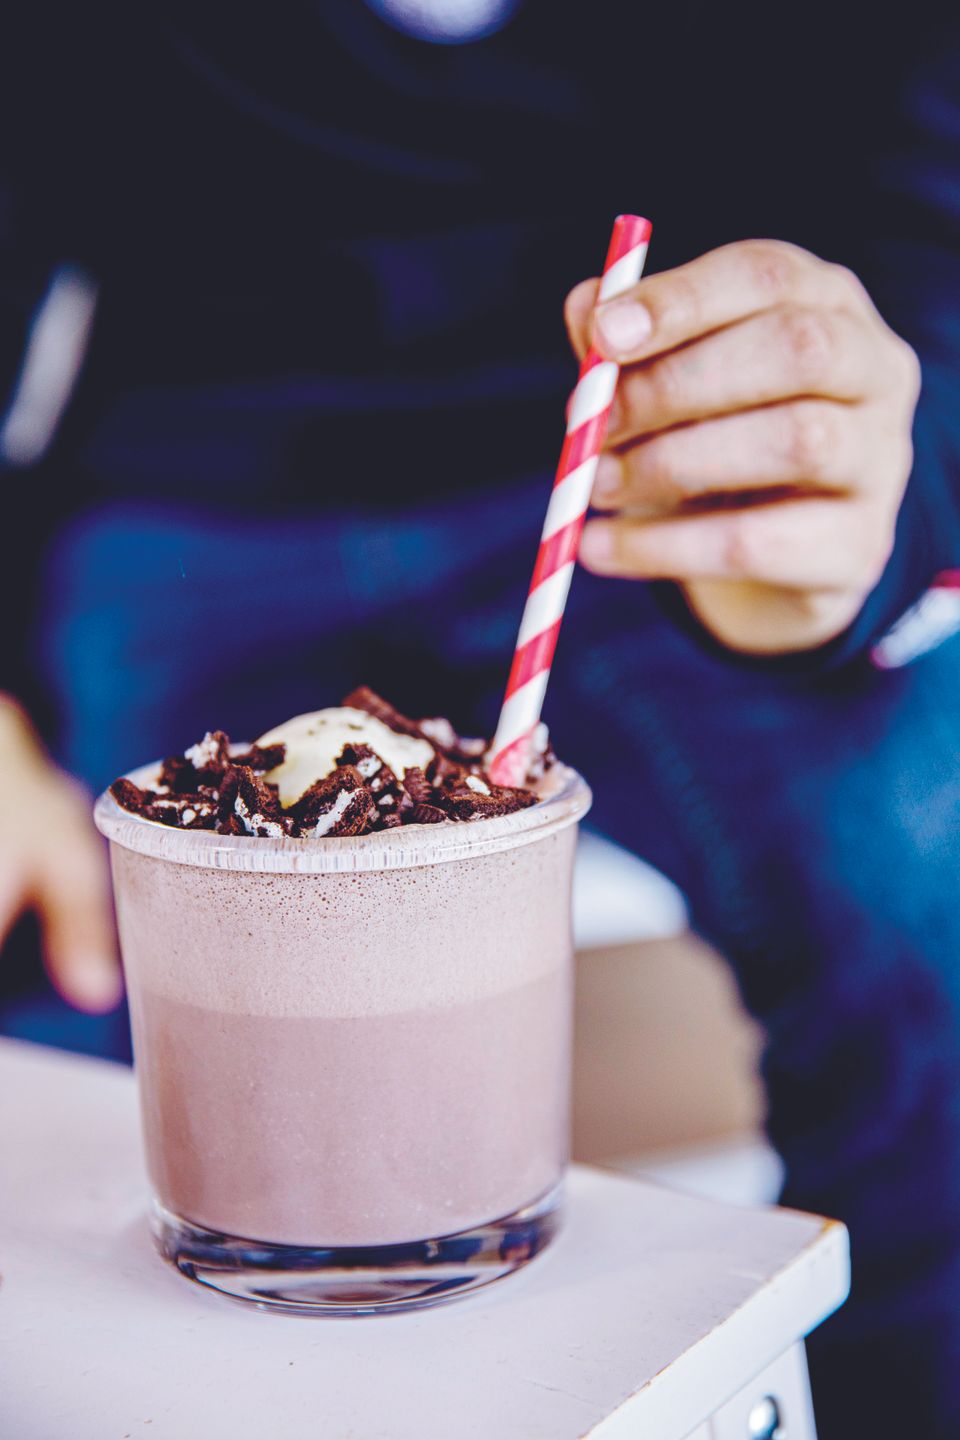 En hånd holder et rødt og hvit-stripet sugerør nedi et glass med sjokoladefarget drikk og Oreo-smuler på toppen.